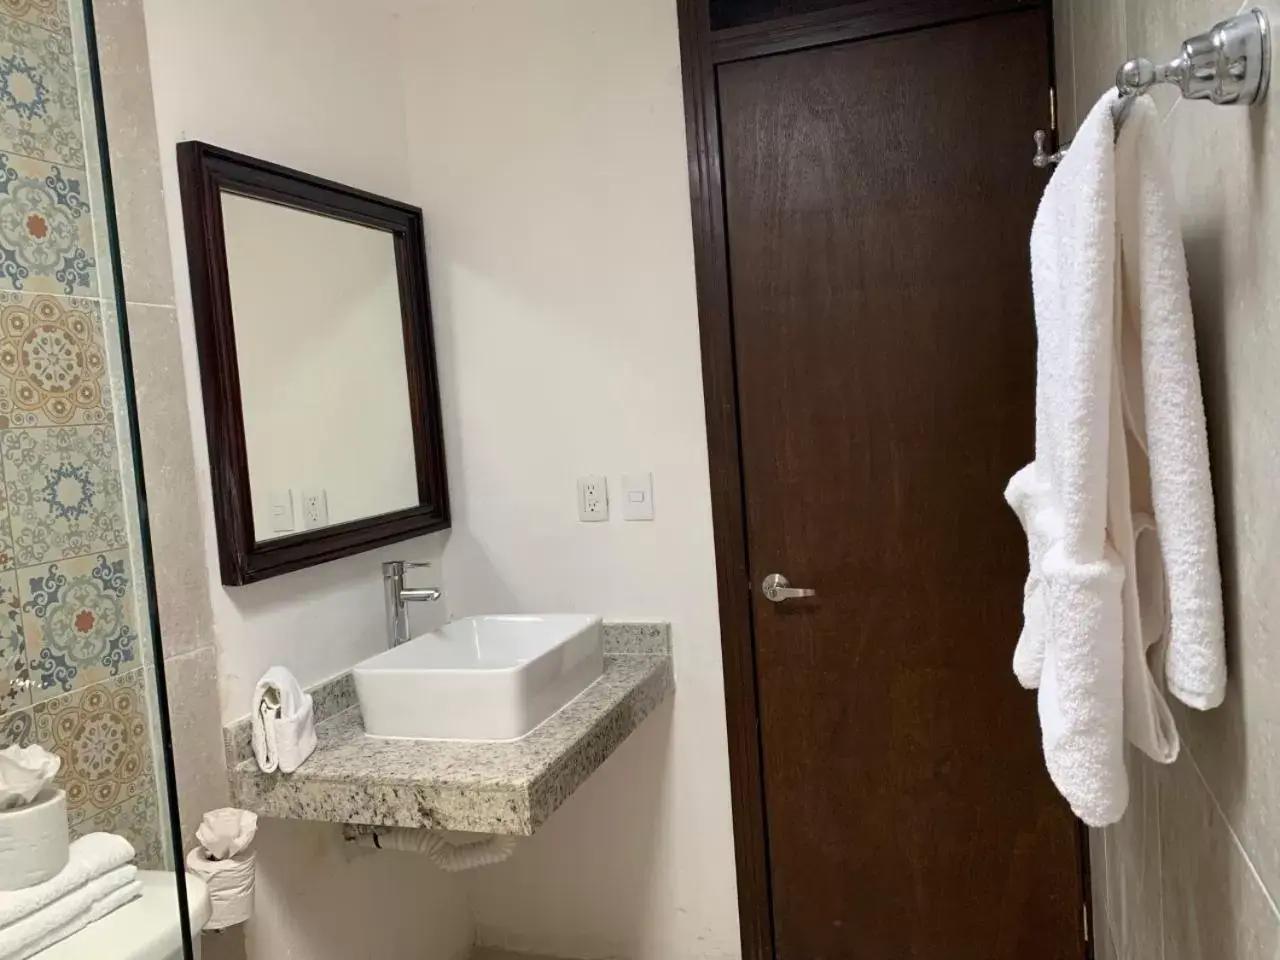 Shower, Bathroom in Hotel Catedral Valladolid Yucatan